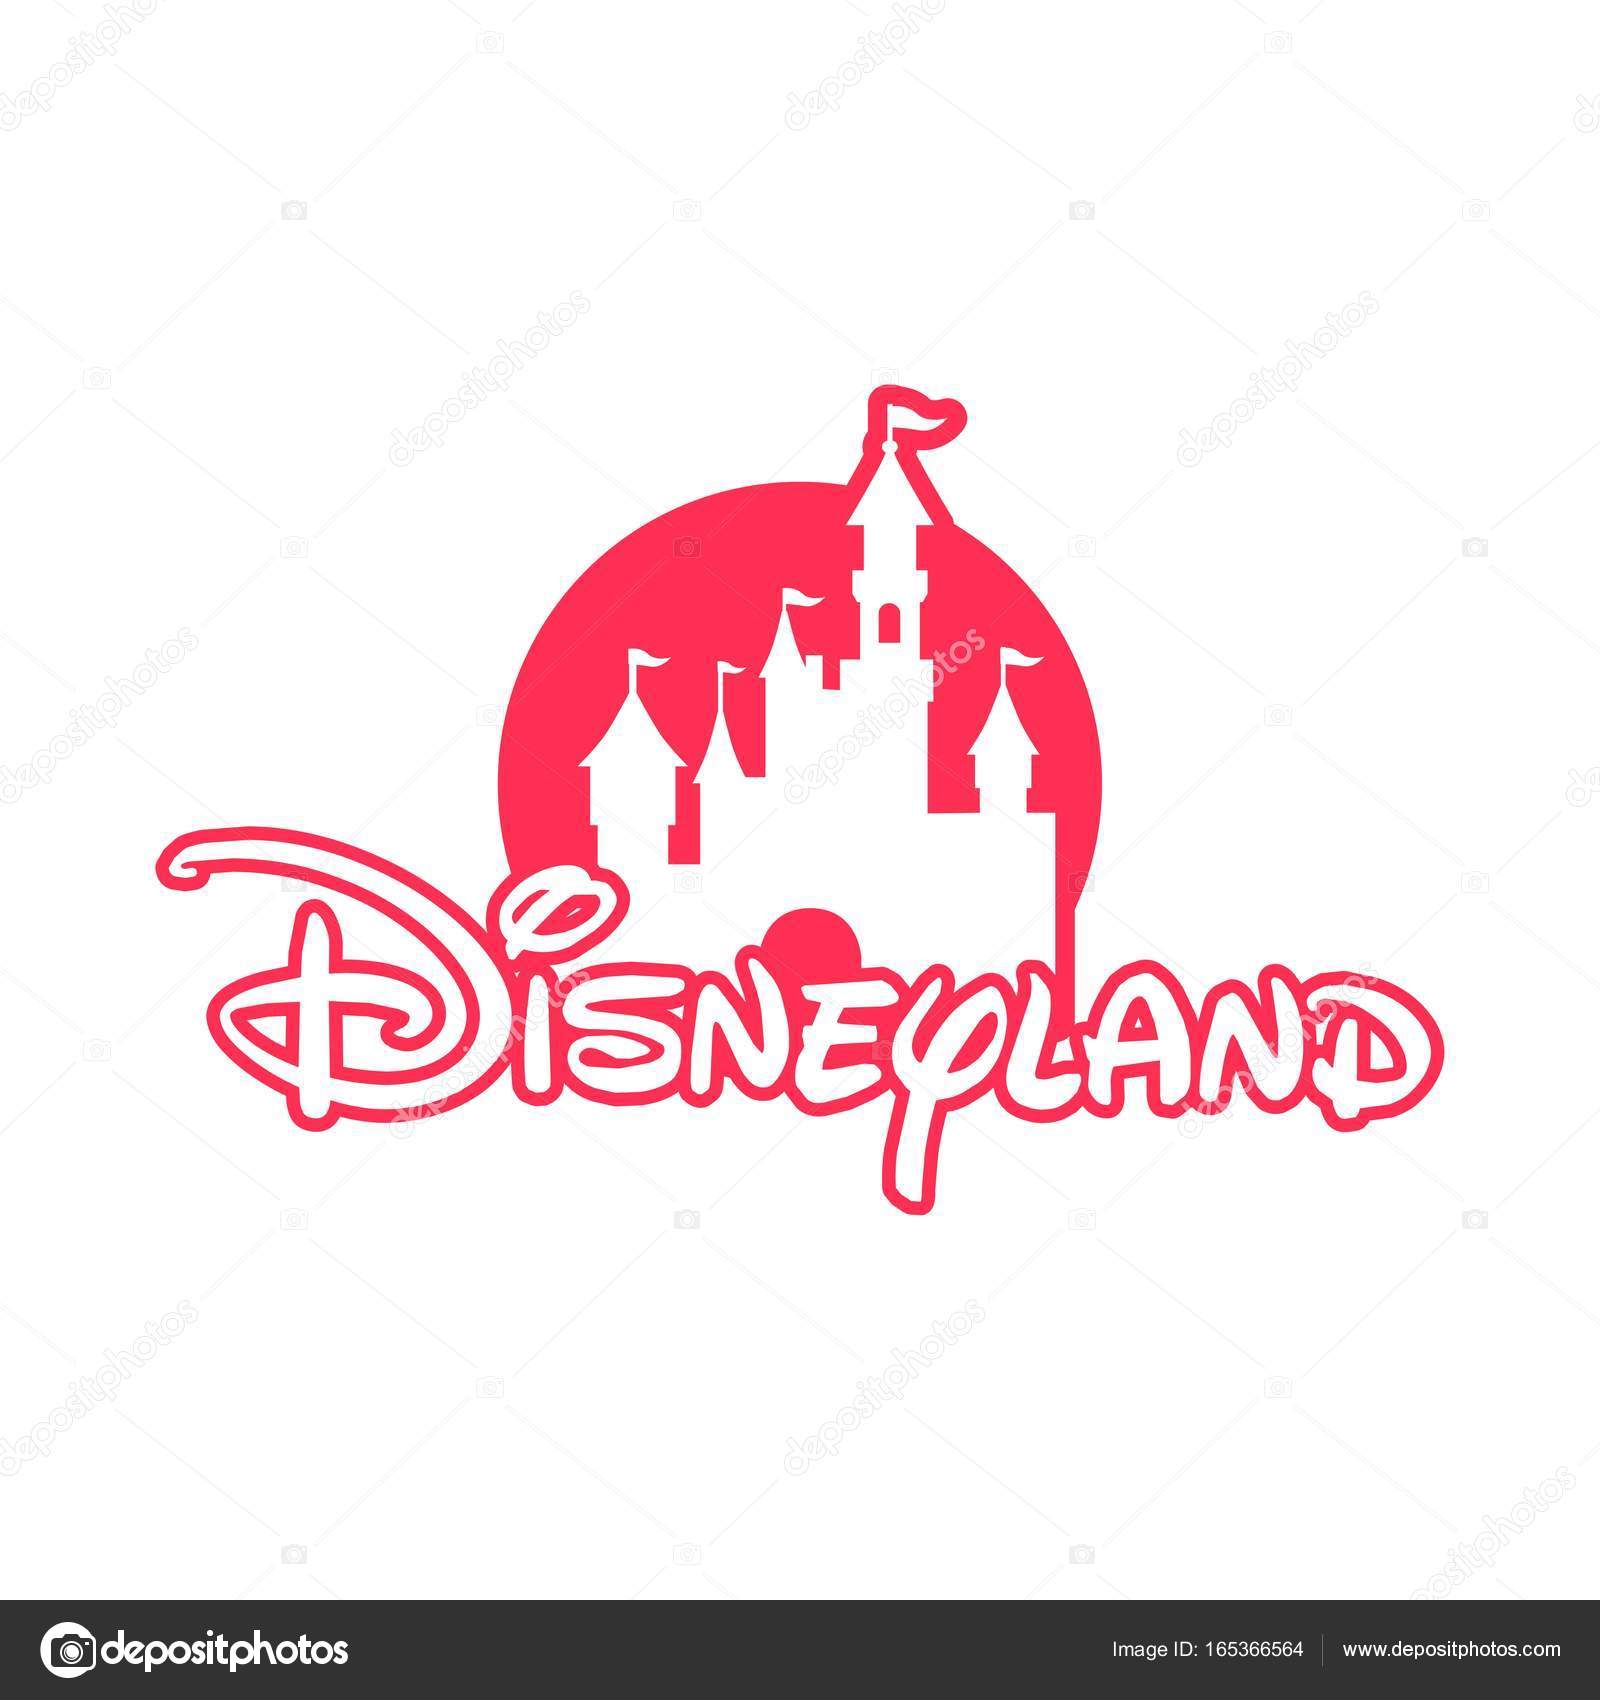 Disney Channel - HD Wallpaper 